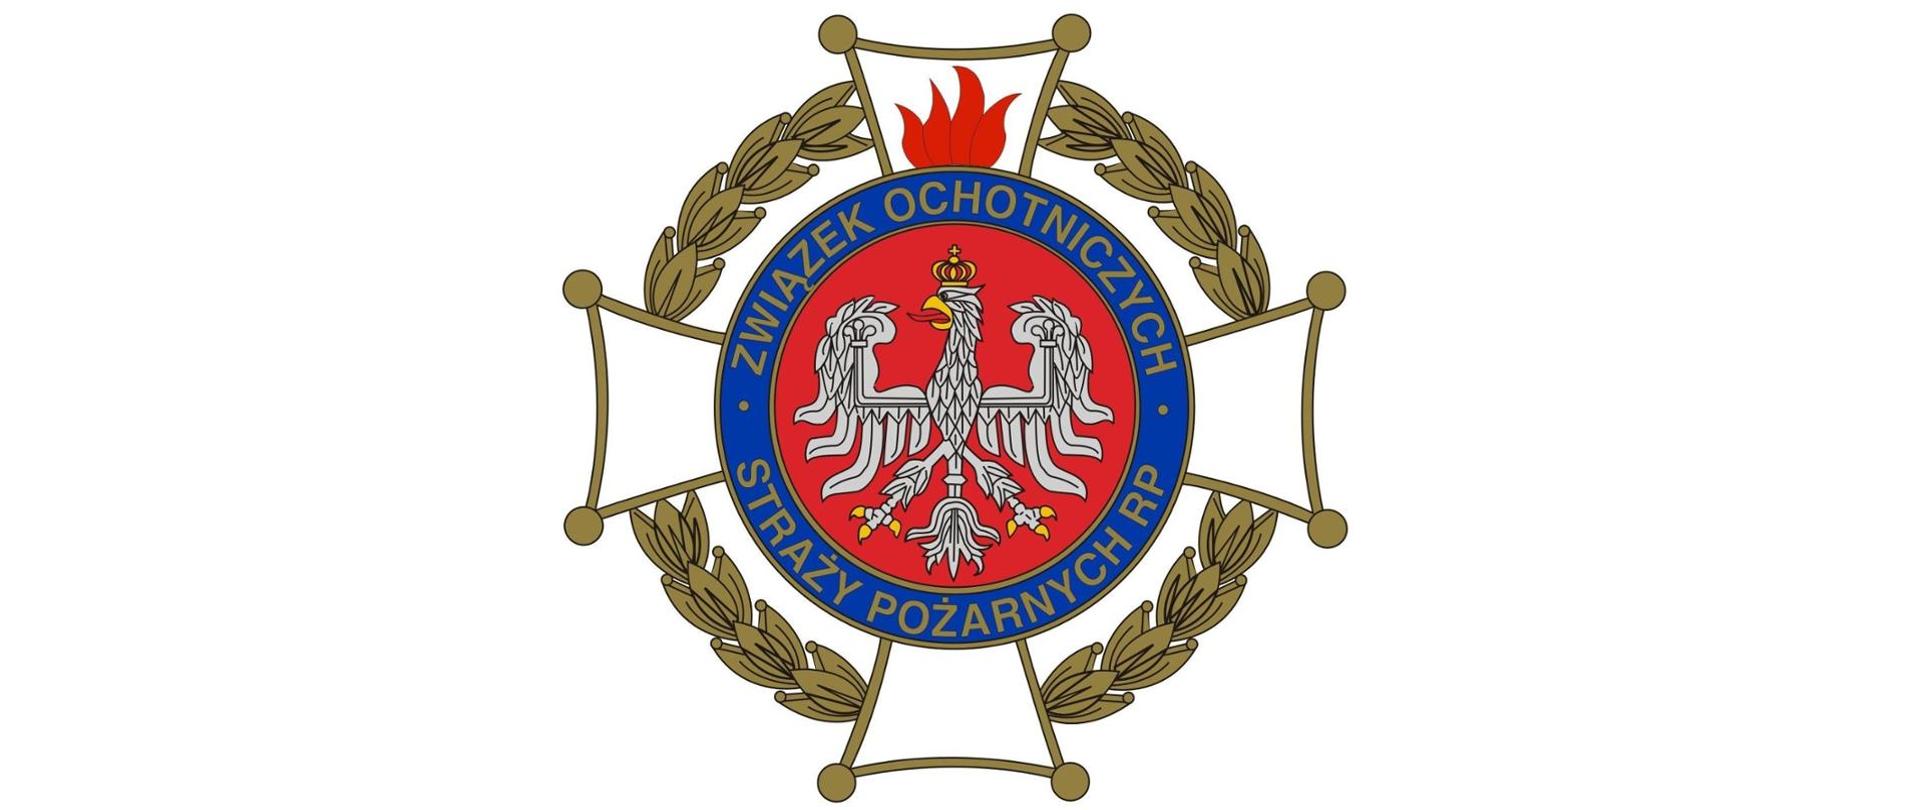 Na zdjęciu widnieje logo Związku Ochotniczych Straży Pożarnych Rzeczypospolitej Polskiej. Na logo składa się biały orzeł z koroną otoczony napisem Związek Ochotniczych Straży Pożarnych RP. Orzeł znajduje się na planie białego krzyża otoczonego wieńcem z liści.